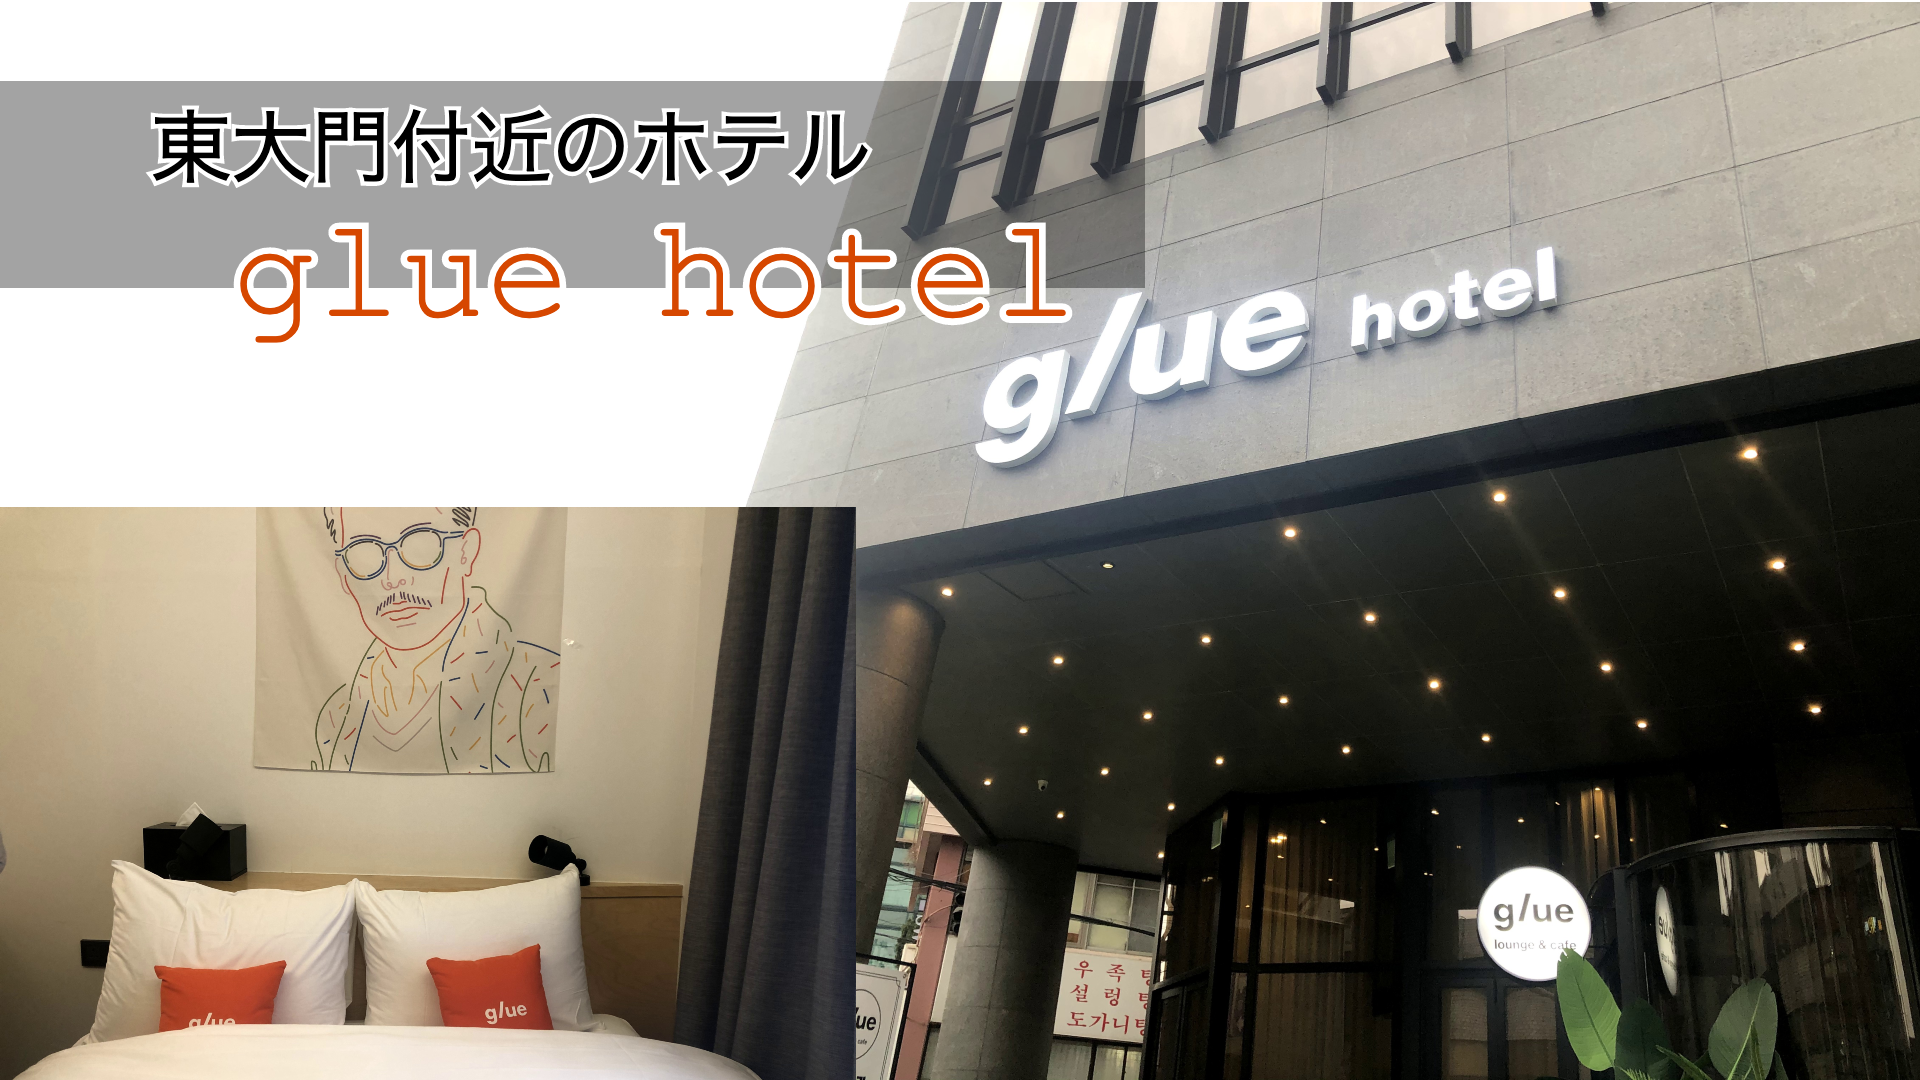 東大門・広蔵市場に近いホテル「Glue Hotel / グルーホテル」